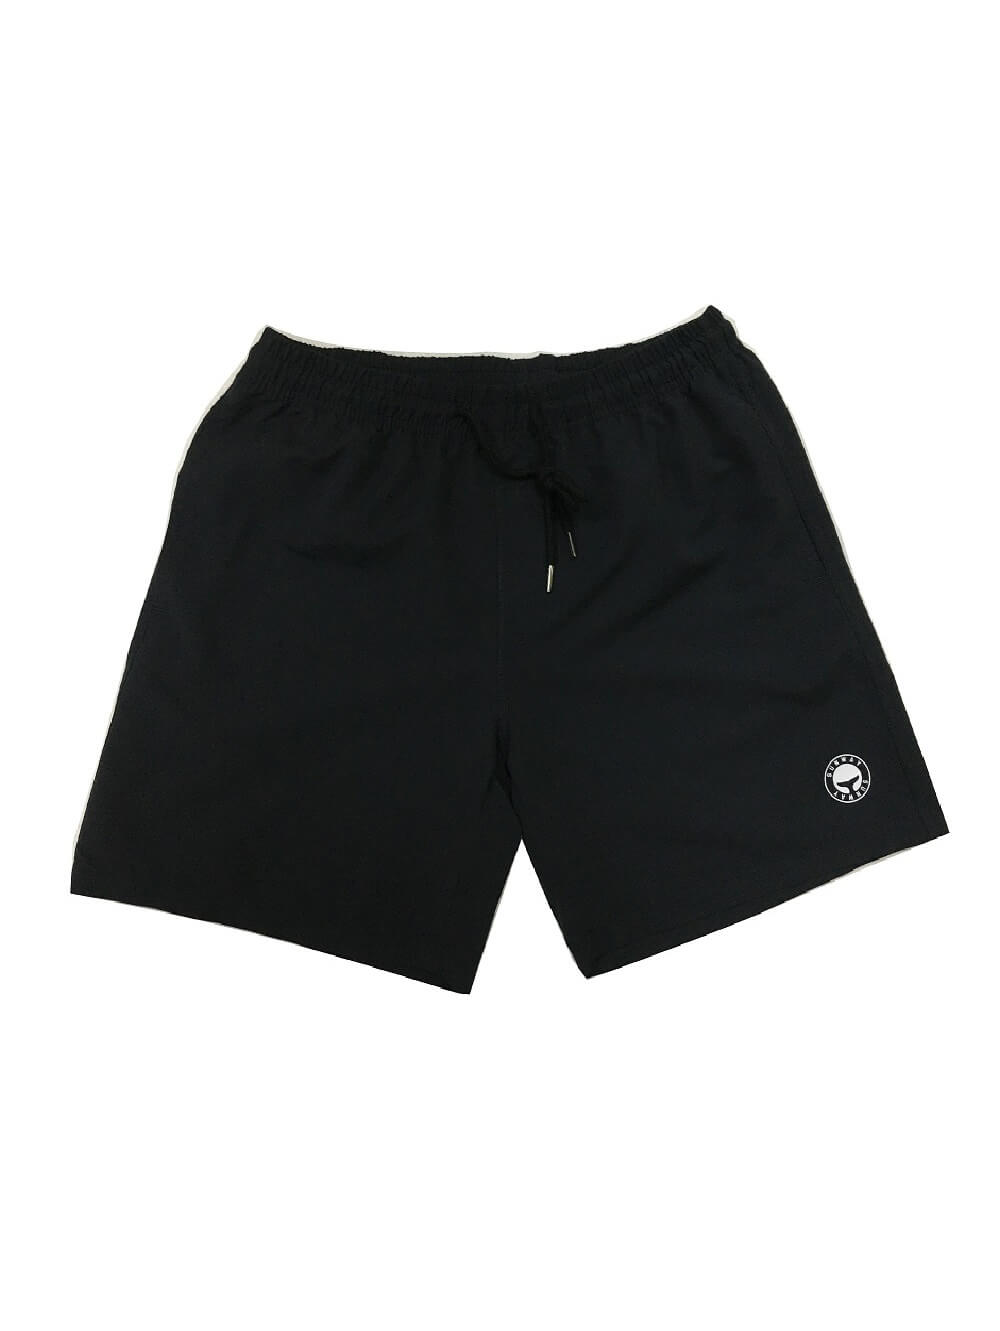 Black Board Shorts for Men - SunWay